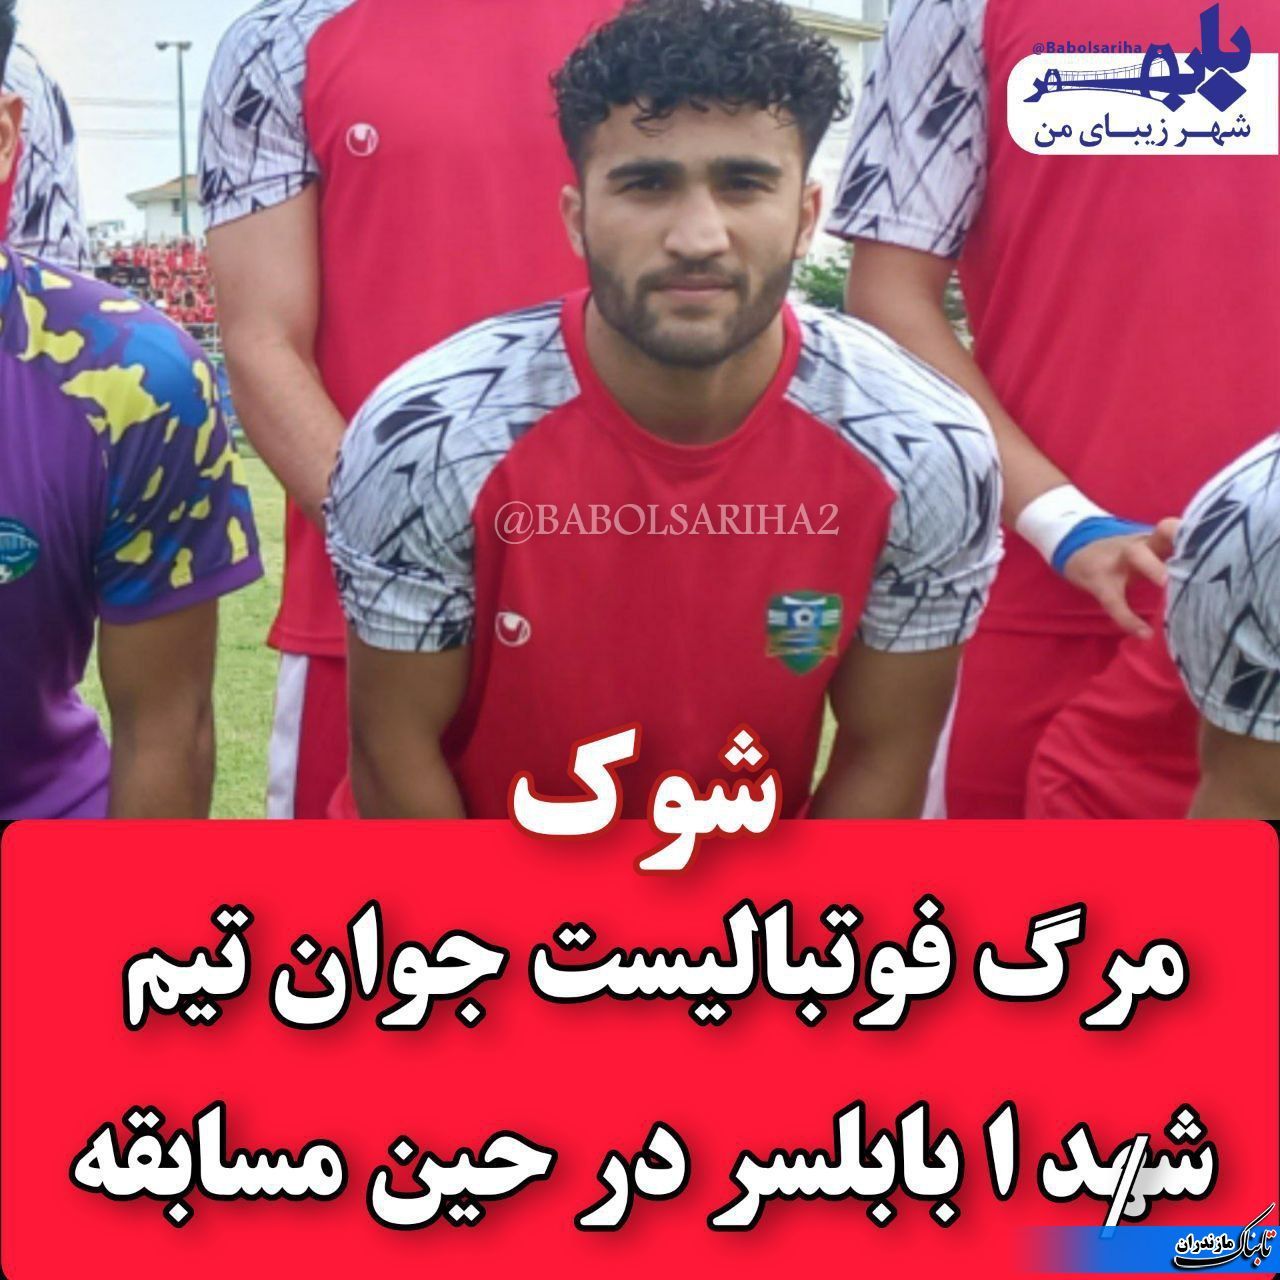  درگذشت فوتبالیست تیم شهدا بابلسر در حین بازی